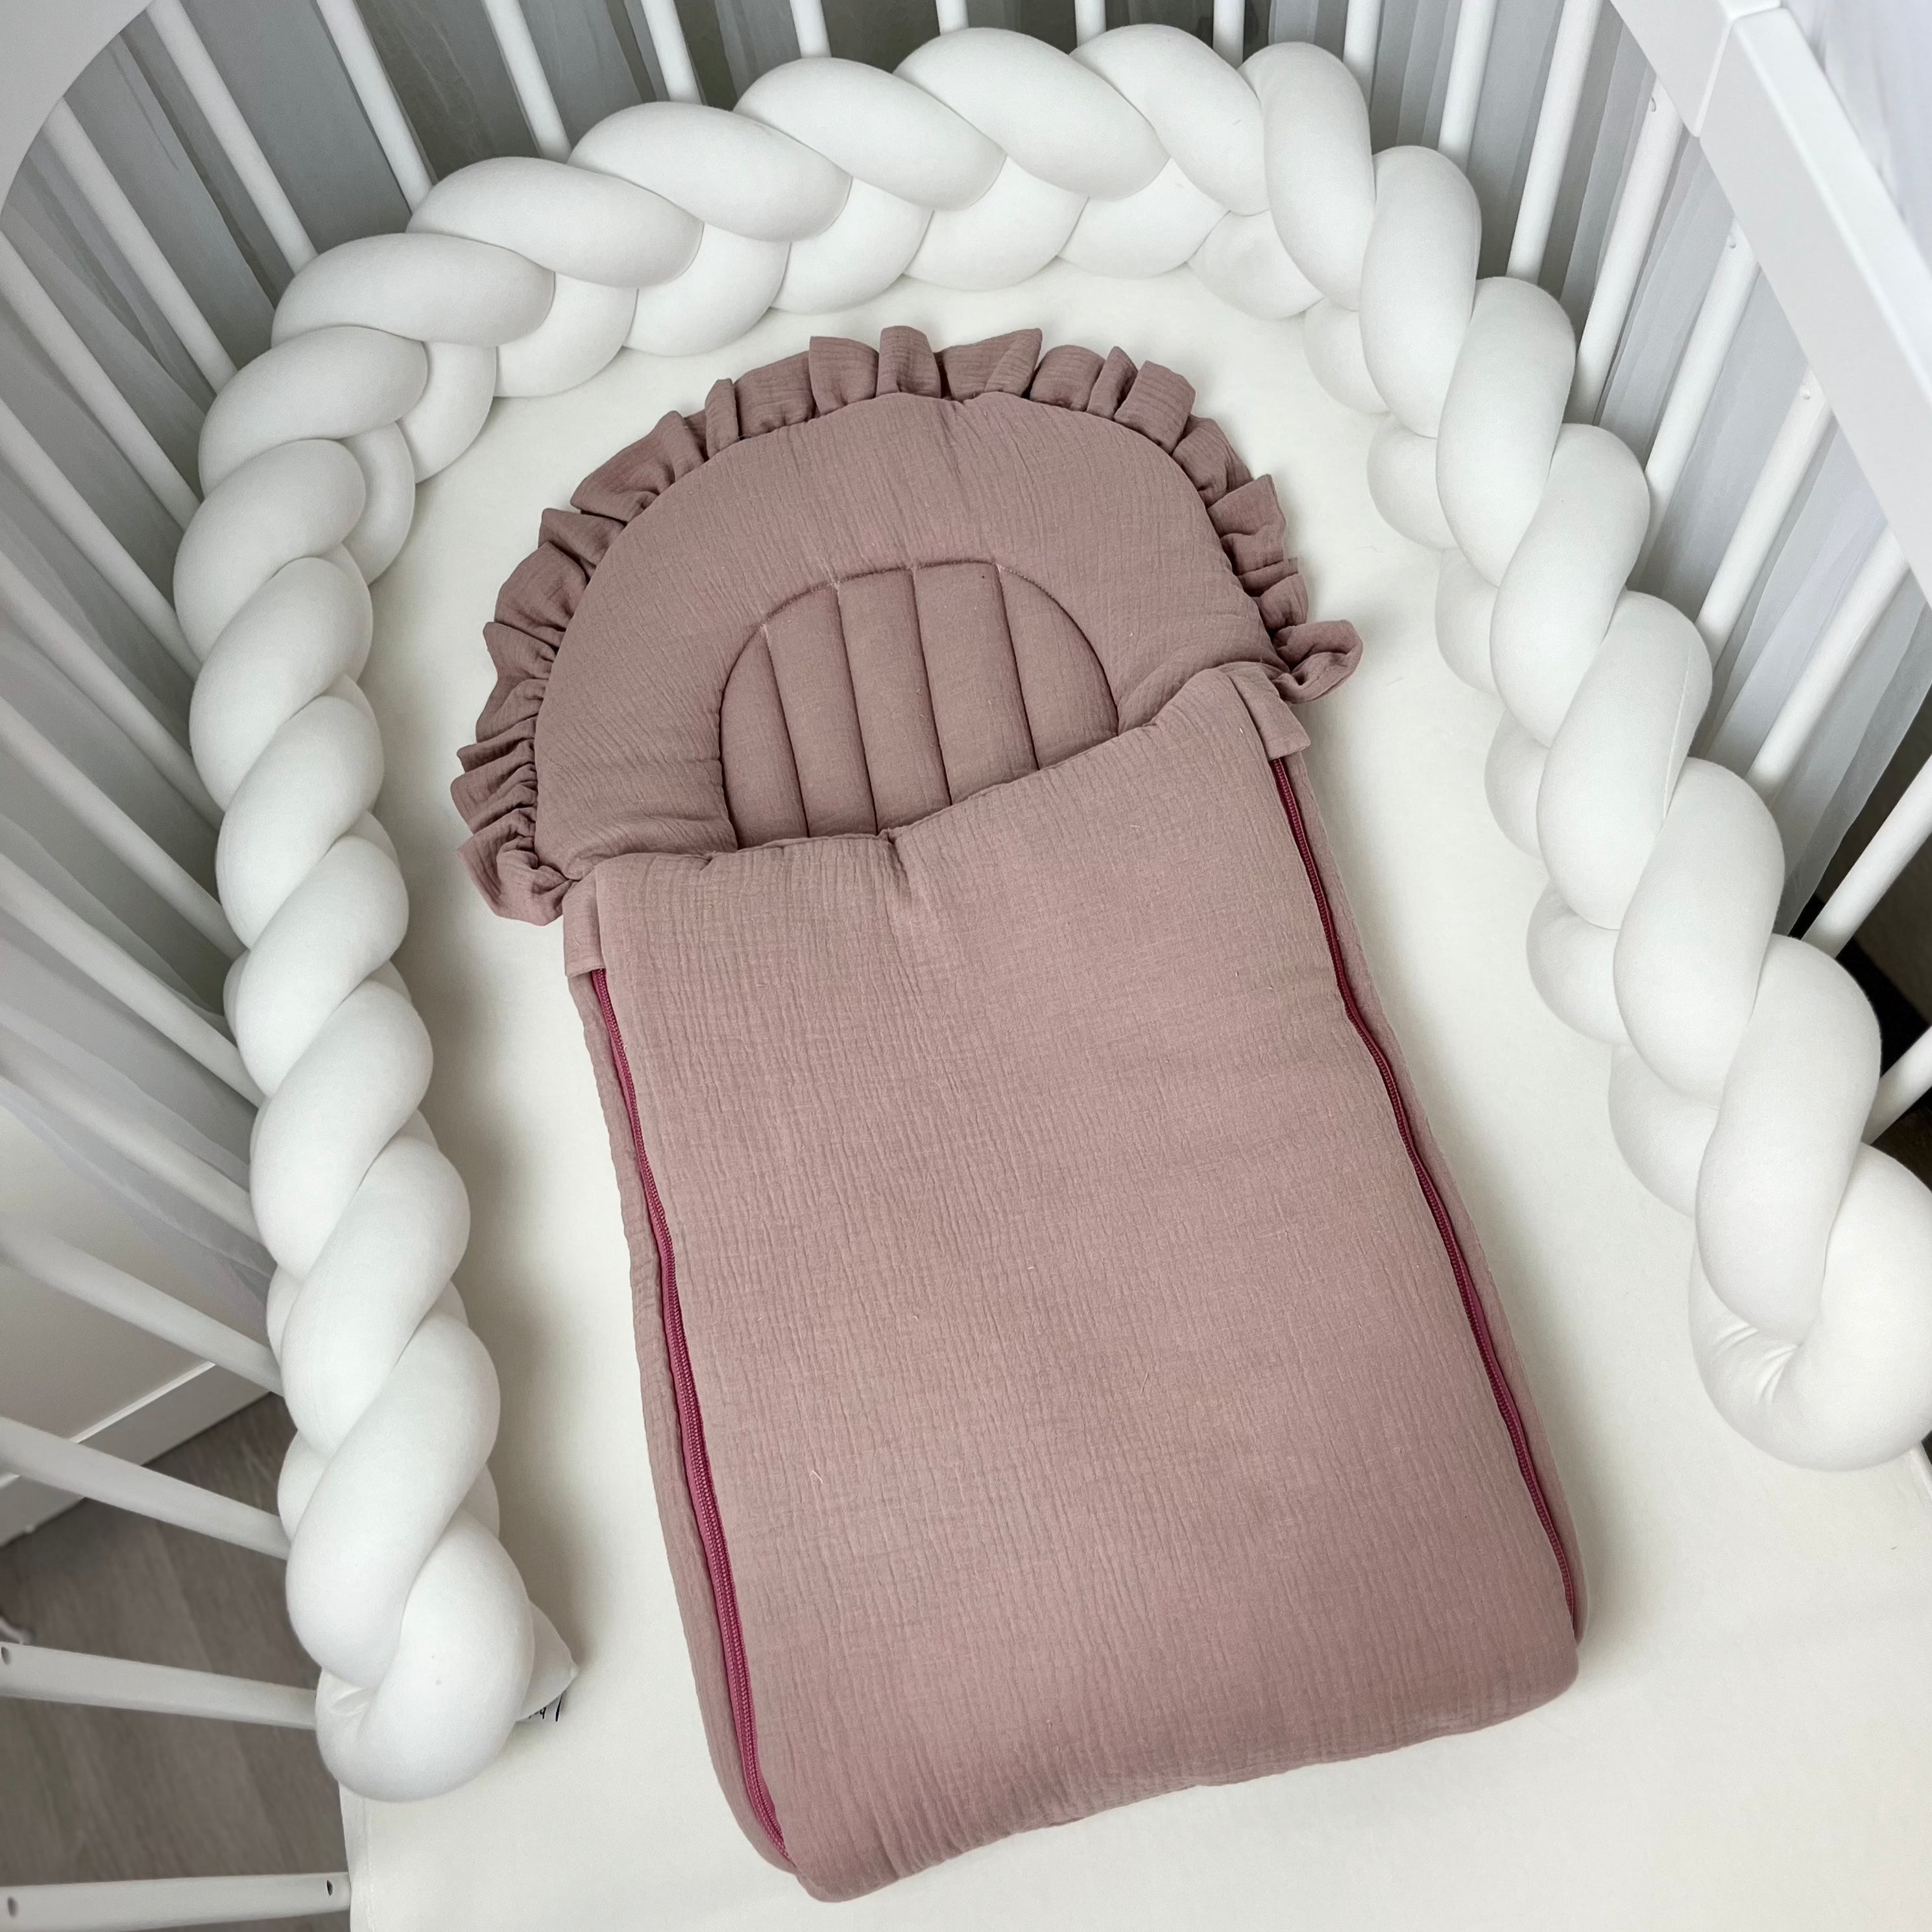 Flacher Babyschlafsack mit Wellenschnitt & Rüschen | Musselin | Dusty Pink Gr. S & M